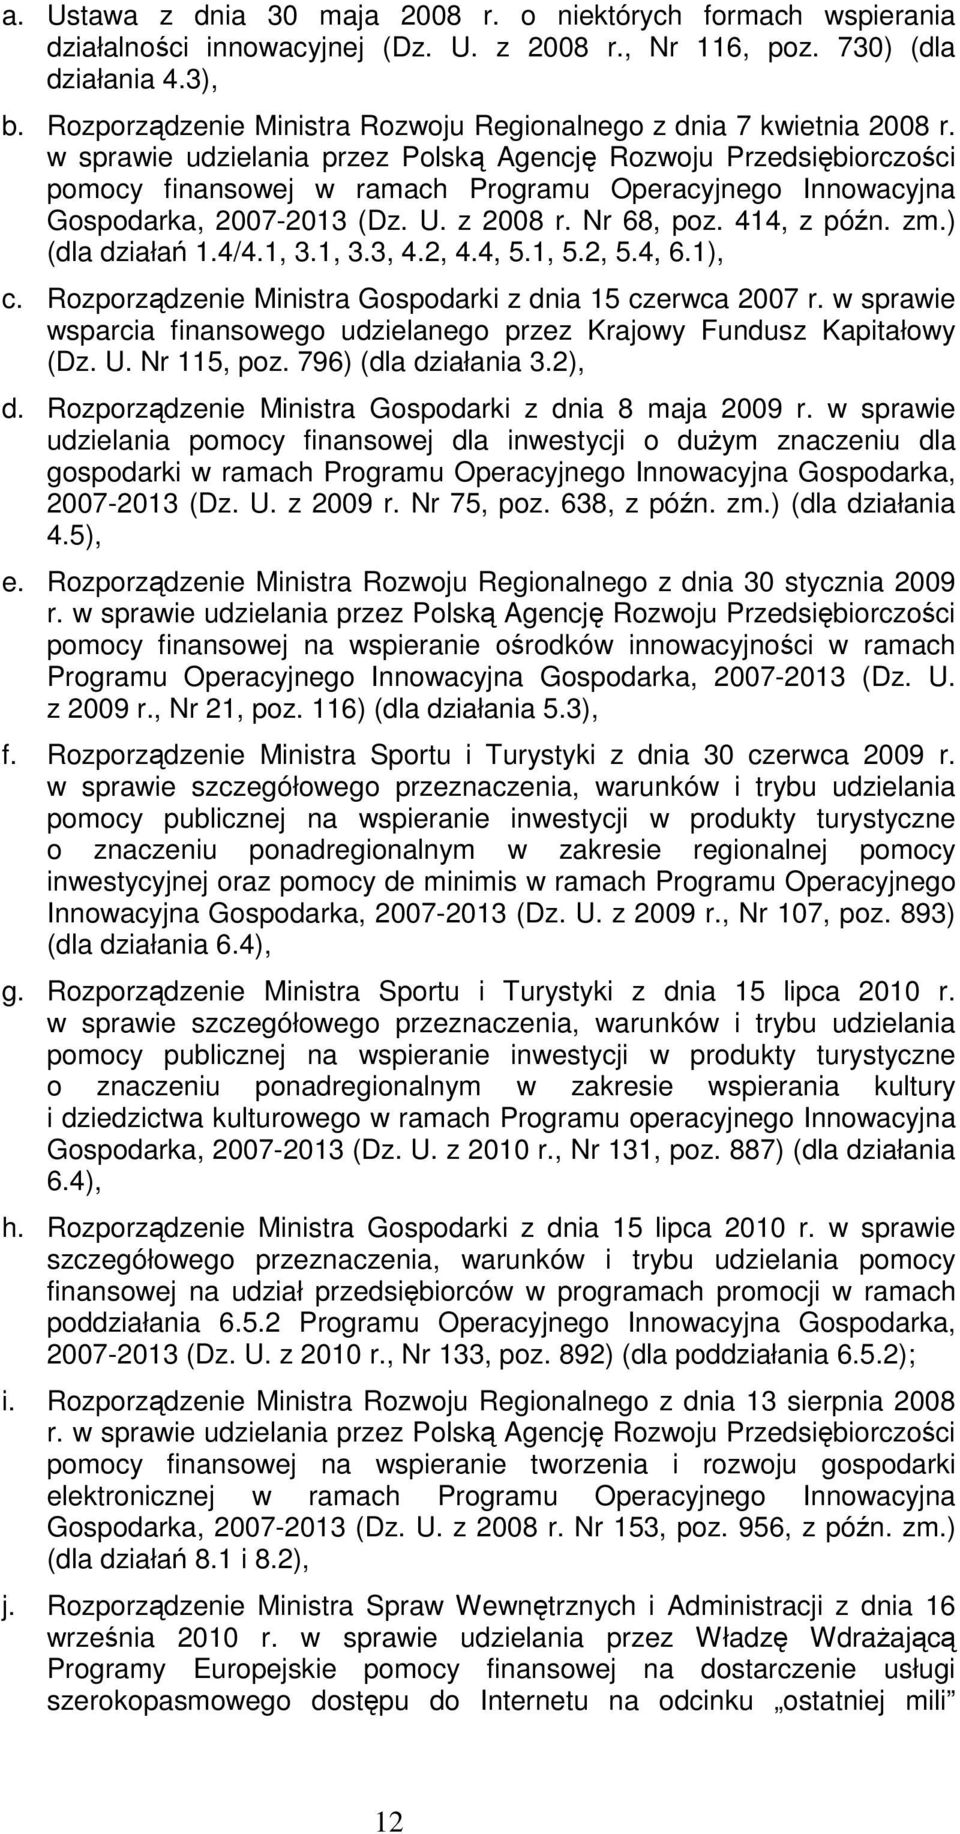 w sprawie udzielania przez Polską Agencję Rozwoju Przedsiębiorczości pomocy finansowej w ramach Programu Operacyjnego Innowacyjna Gospodarka, 2007-2013 (Dz. U. z 2008 r. Nr 68, poz. 414, z późn. zm.